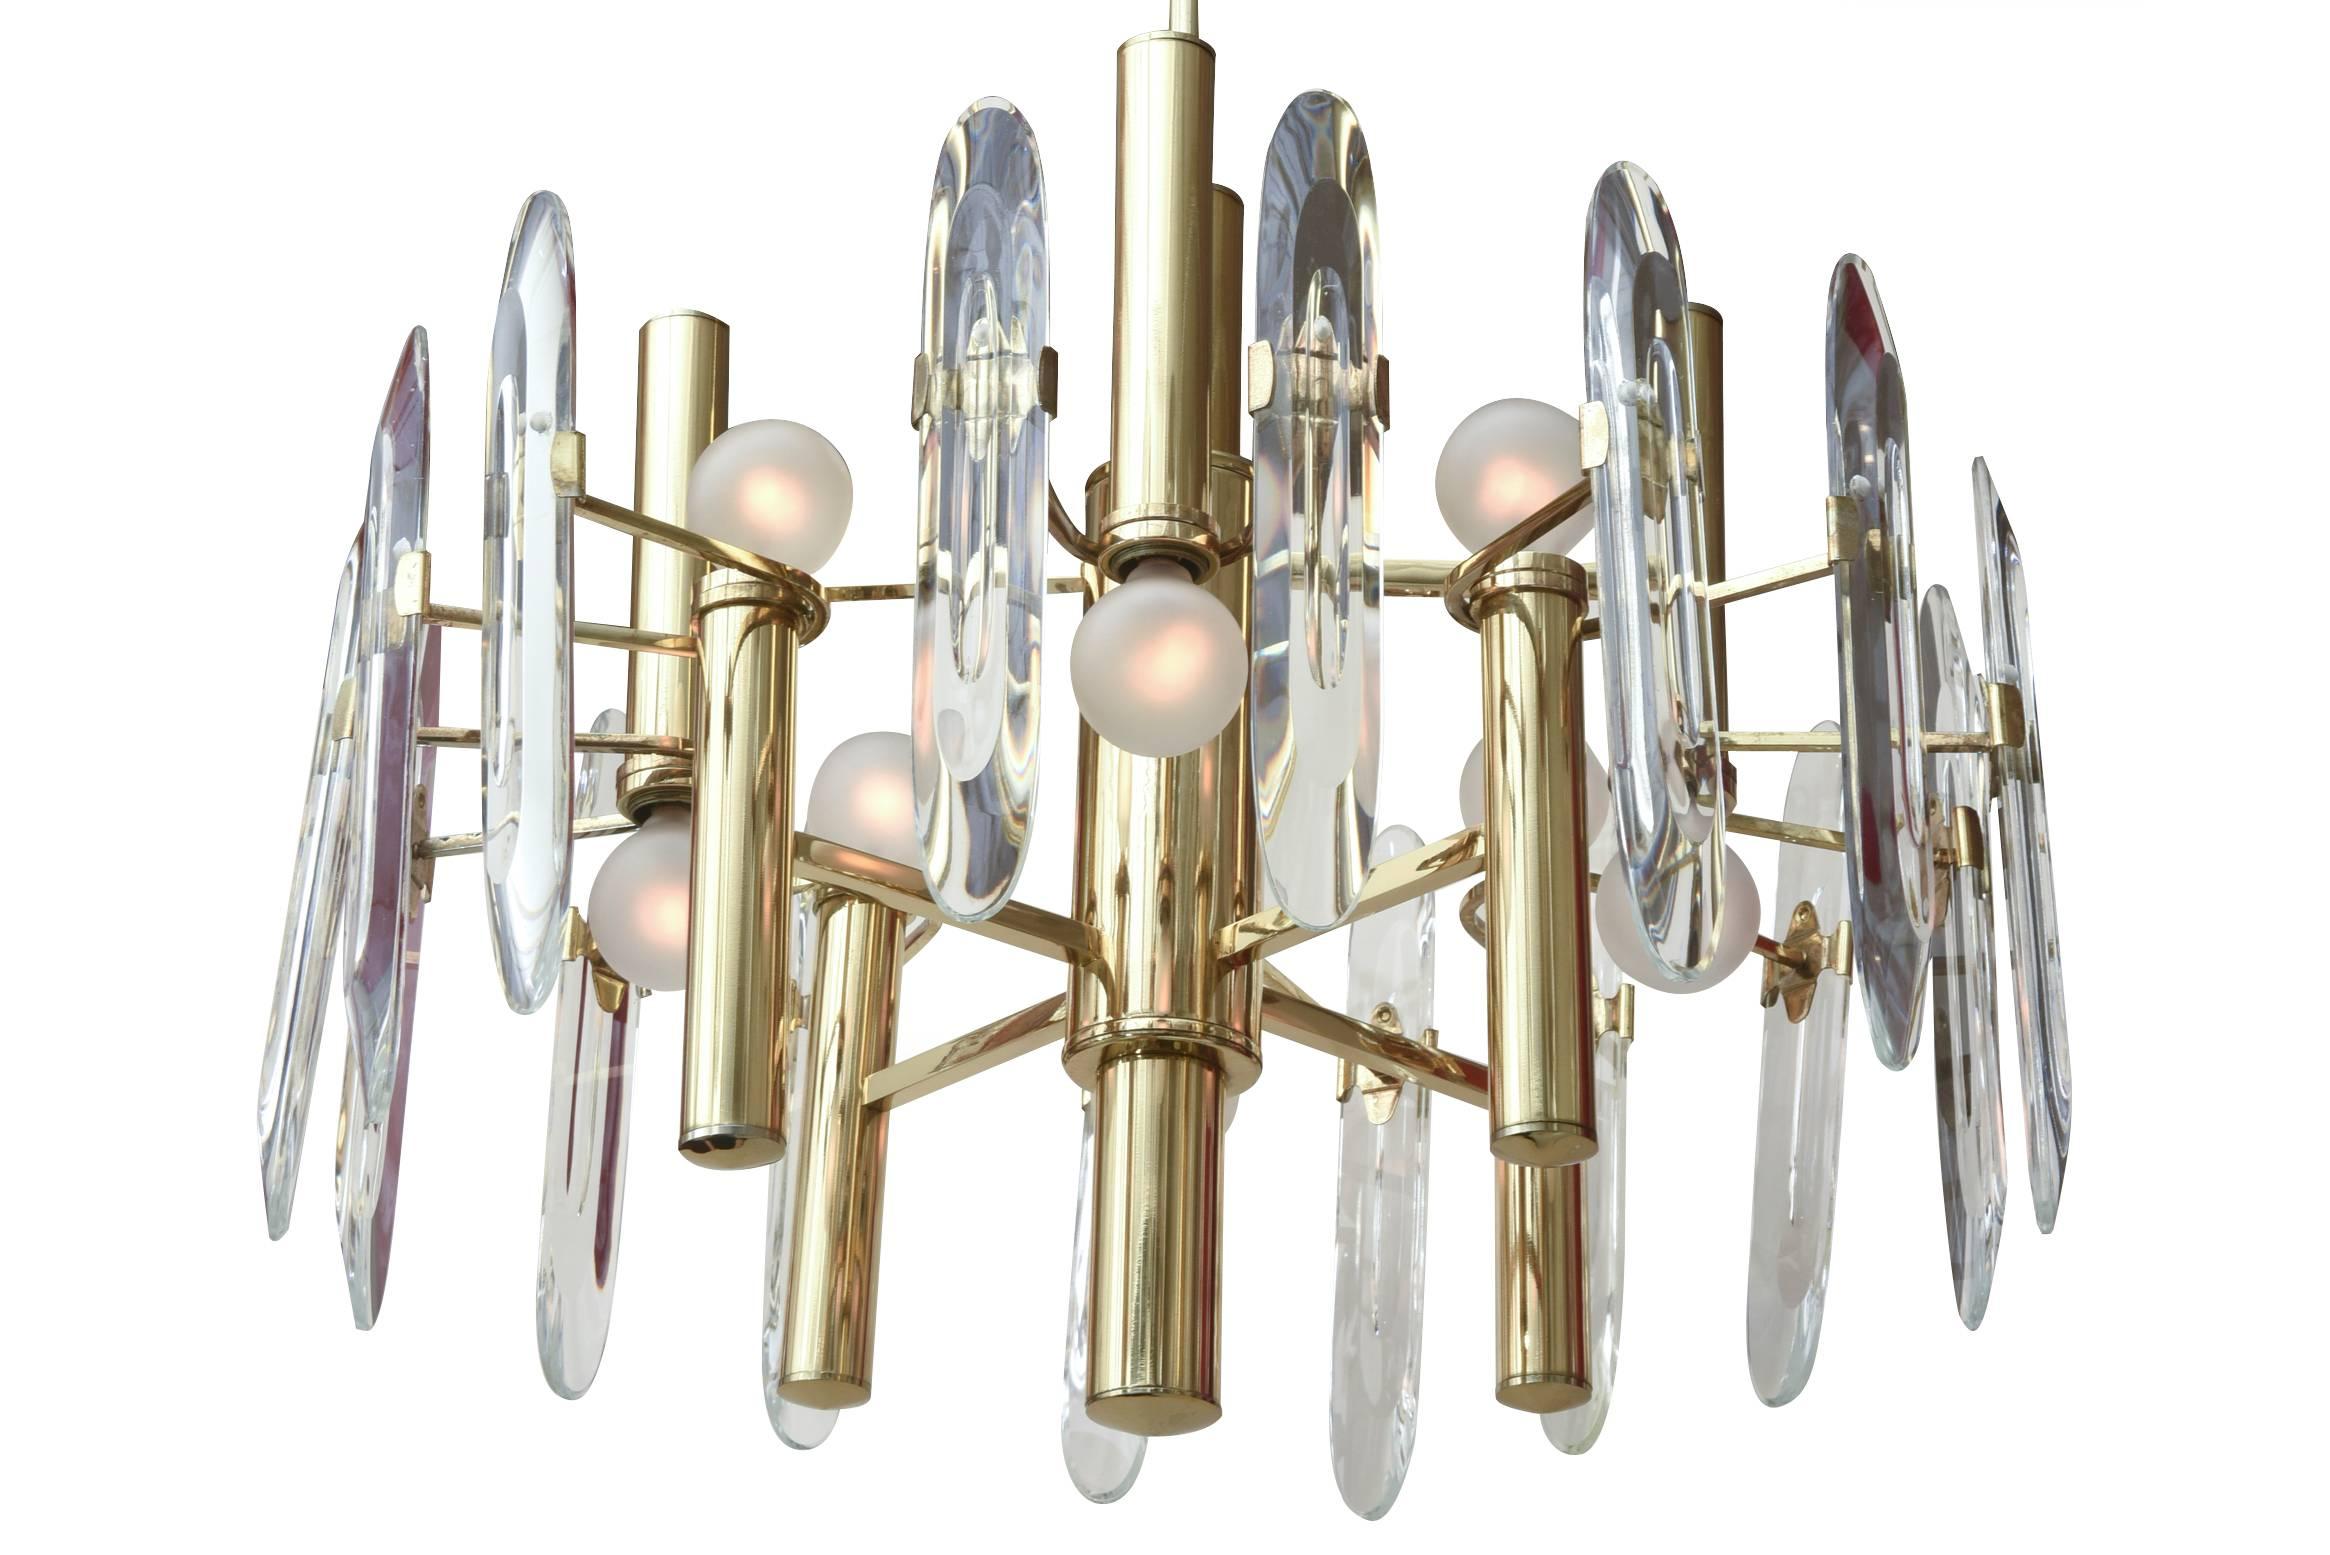 Dieser moderne, elegante italienische Vintage-Kronleuchter von Gaetano Sciolari mit acht Lichtern verfügt über 16 abgeschrägte Prismenglas-Anhänger, die an jedem Arm befestigt sind. Sie sind für den Versand abnehmbar. Die Glühbirne wird abwechselnd